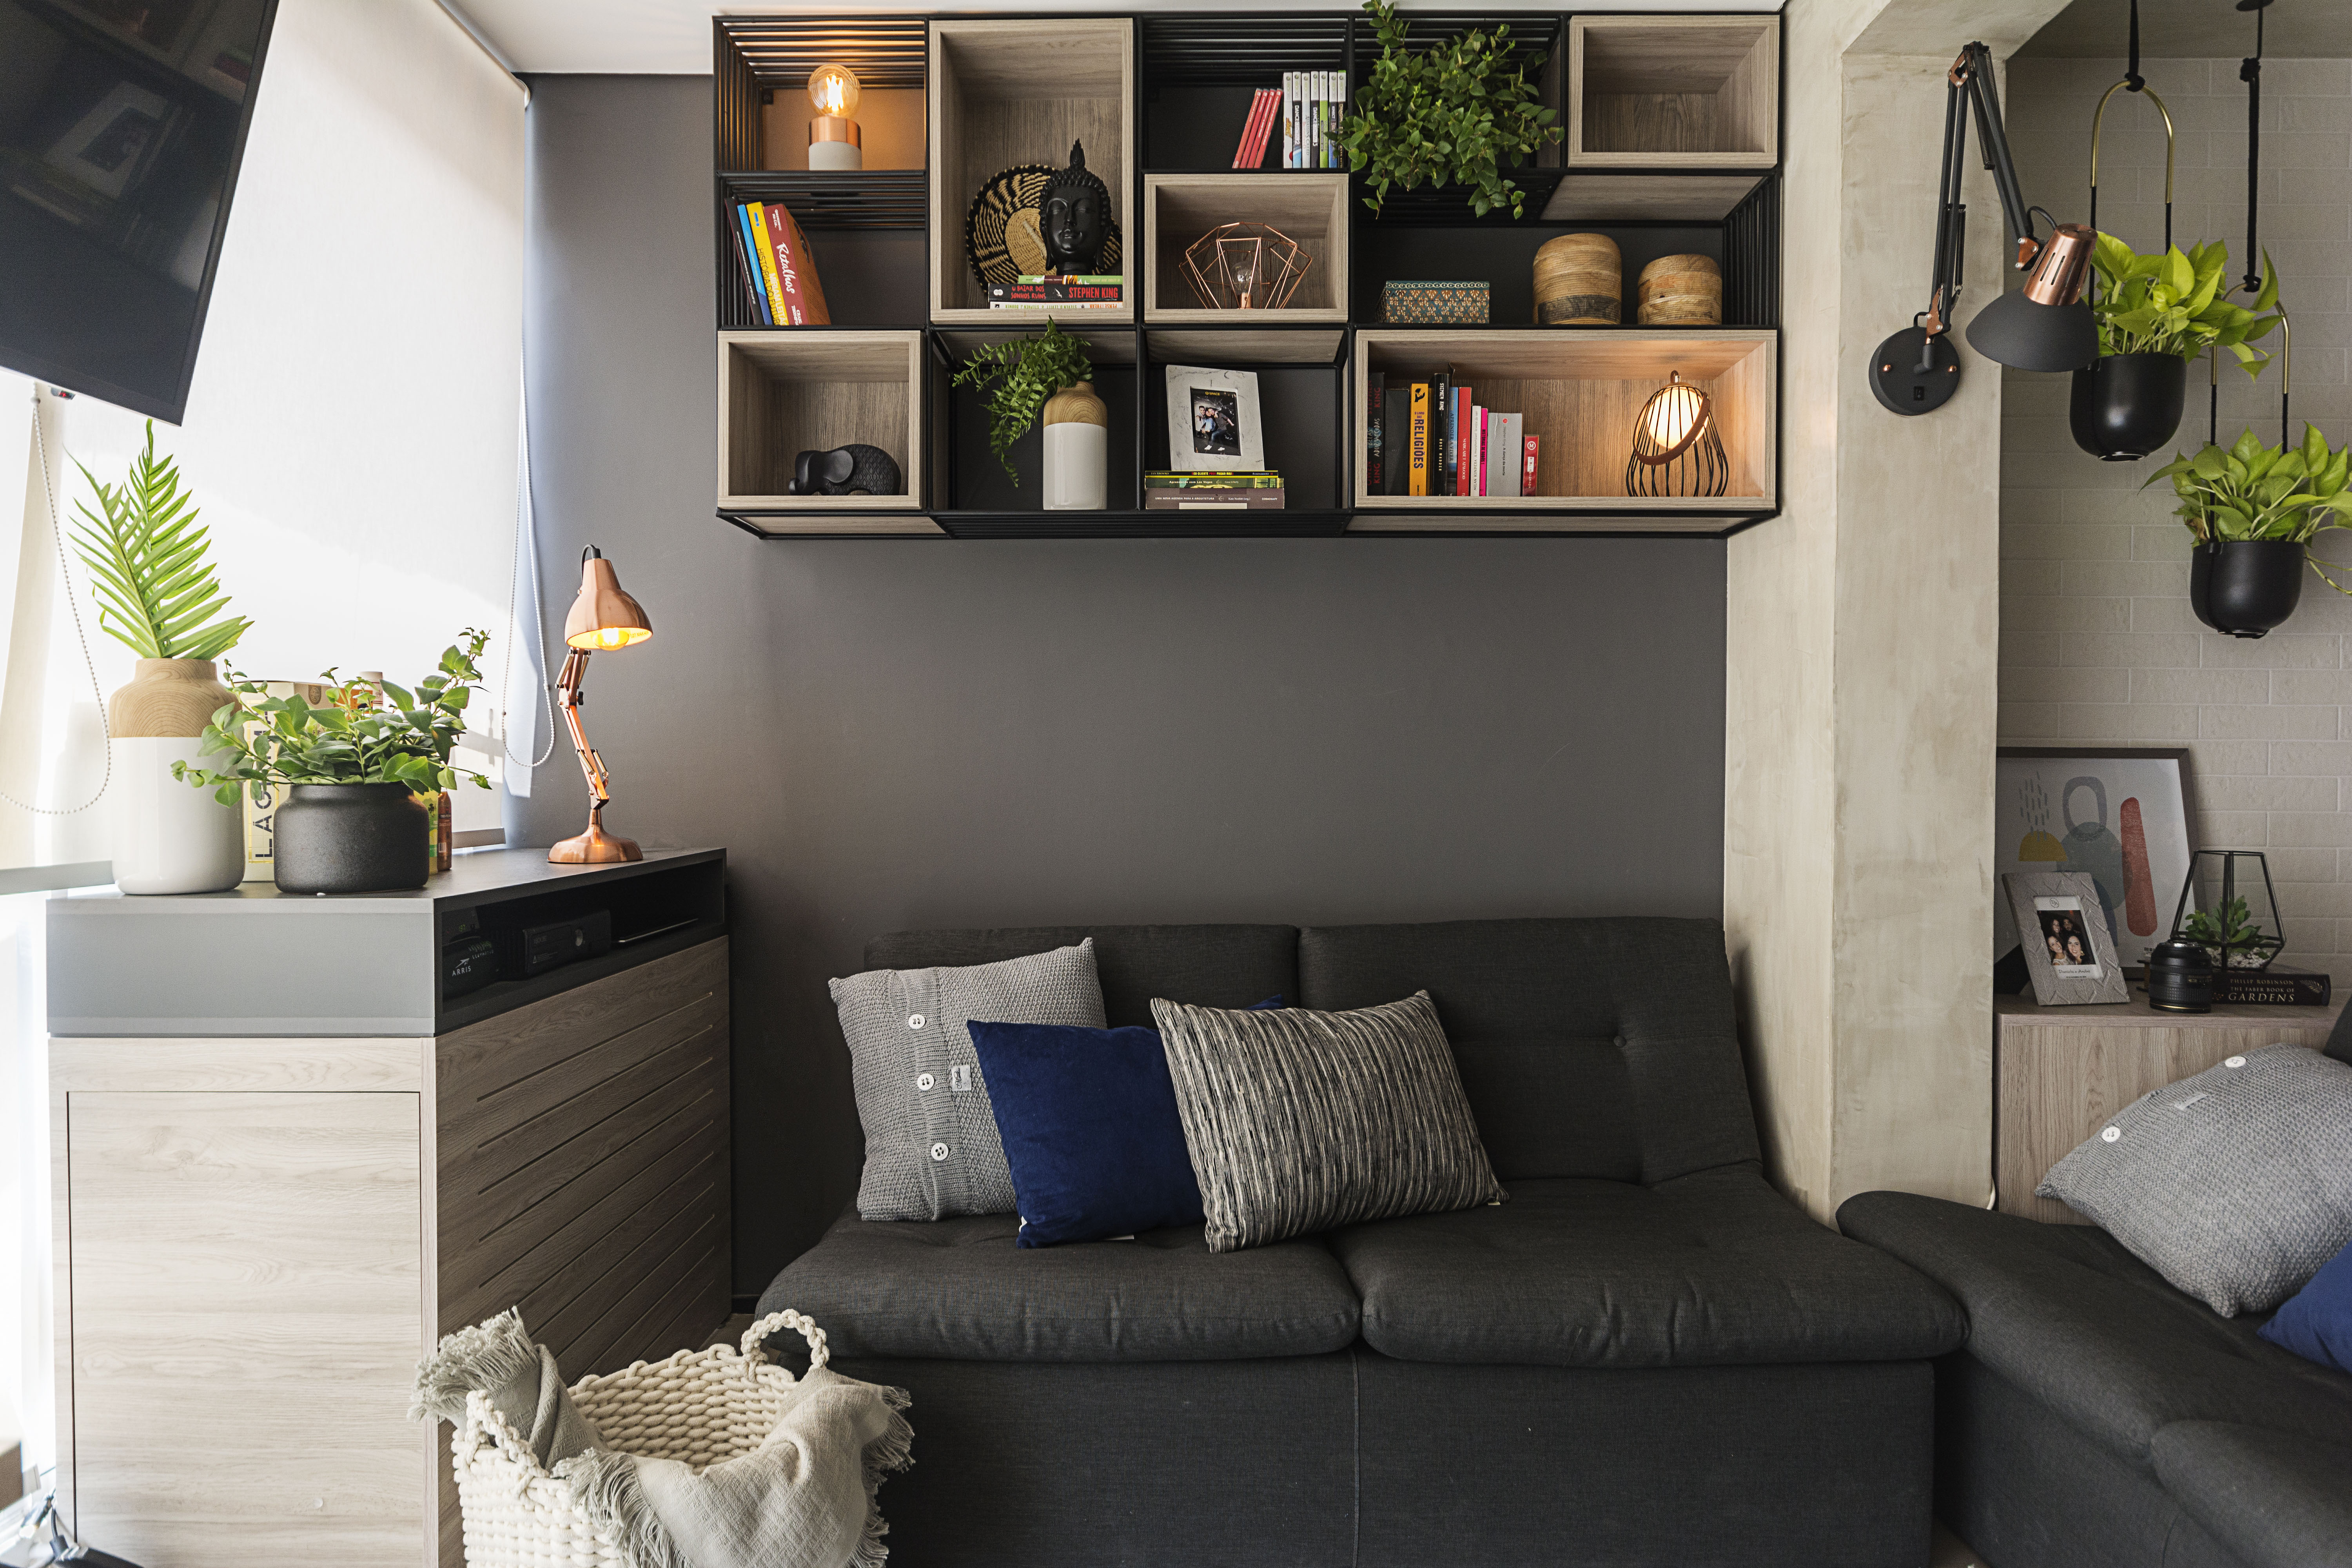 Apartamentos pequenos: veja como iluminar cada cômodo de forma fácil